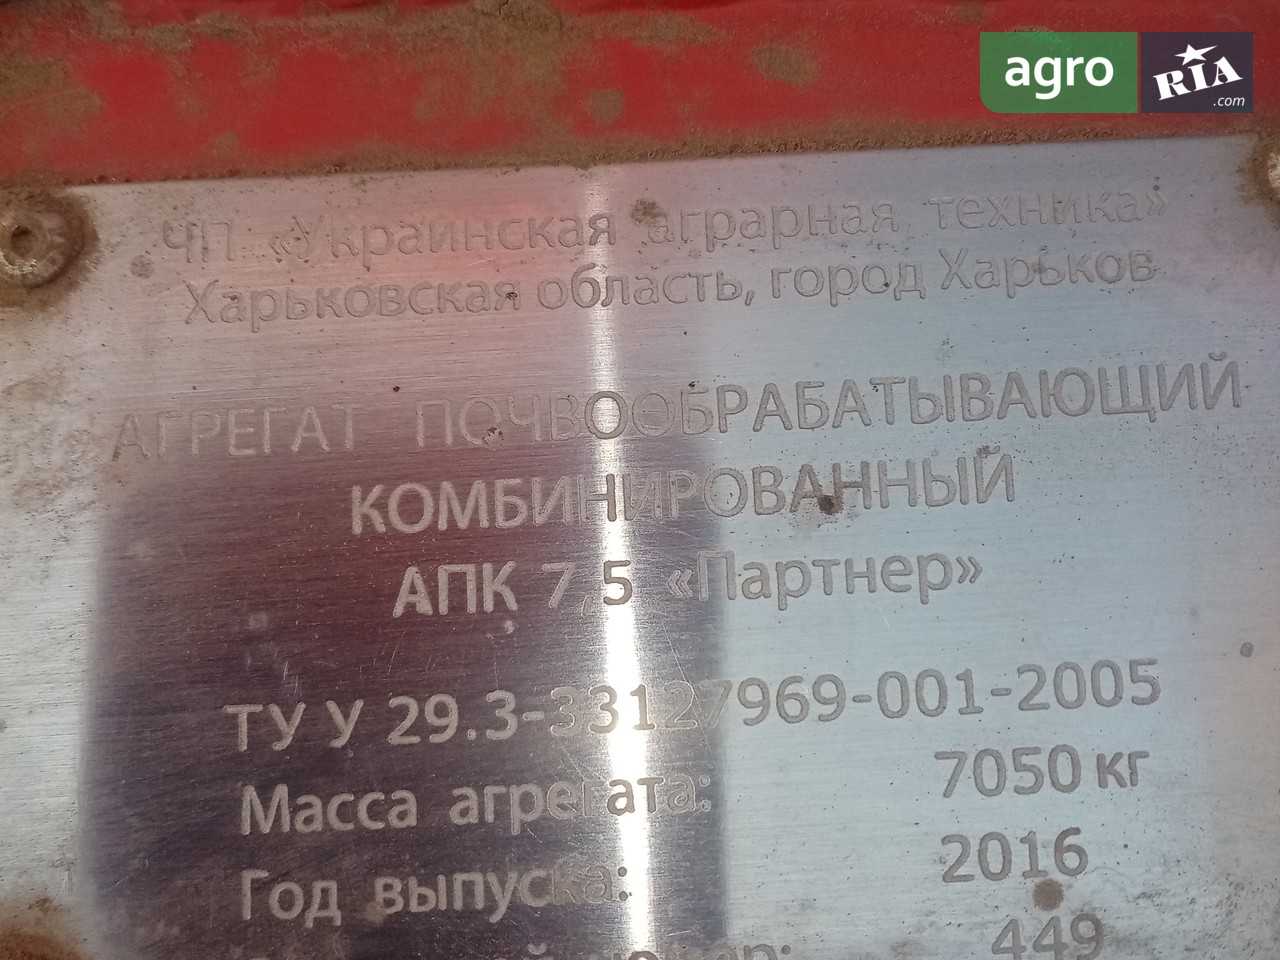 Посевной комплекс Украинская аграрная техника АПК Партнер 2016 - фото 1